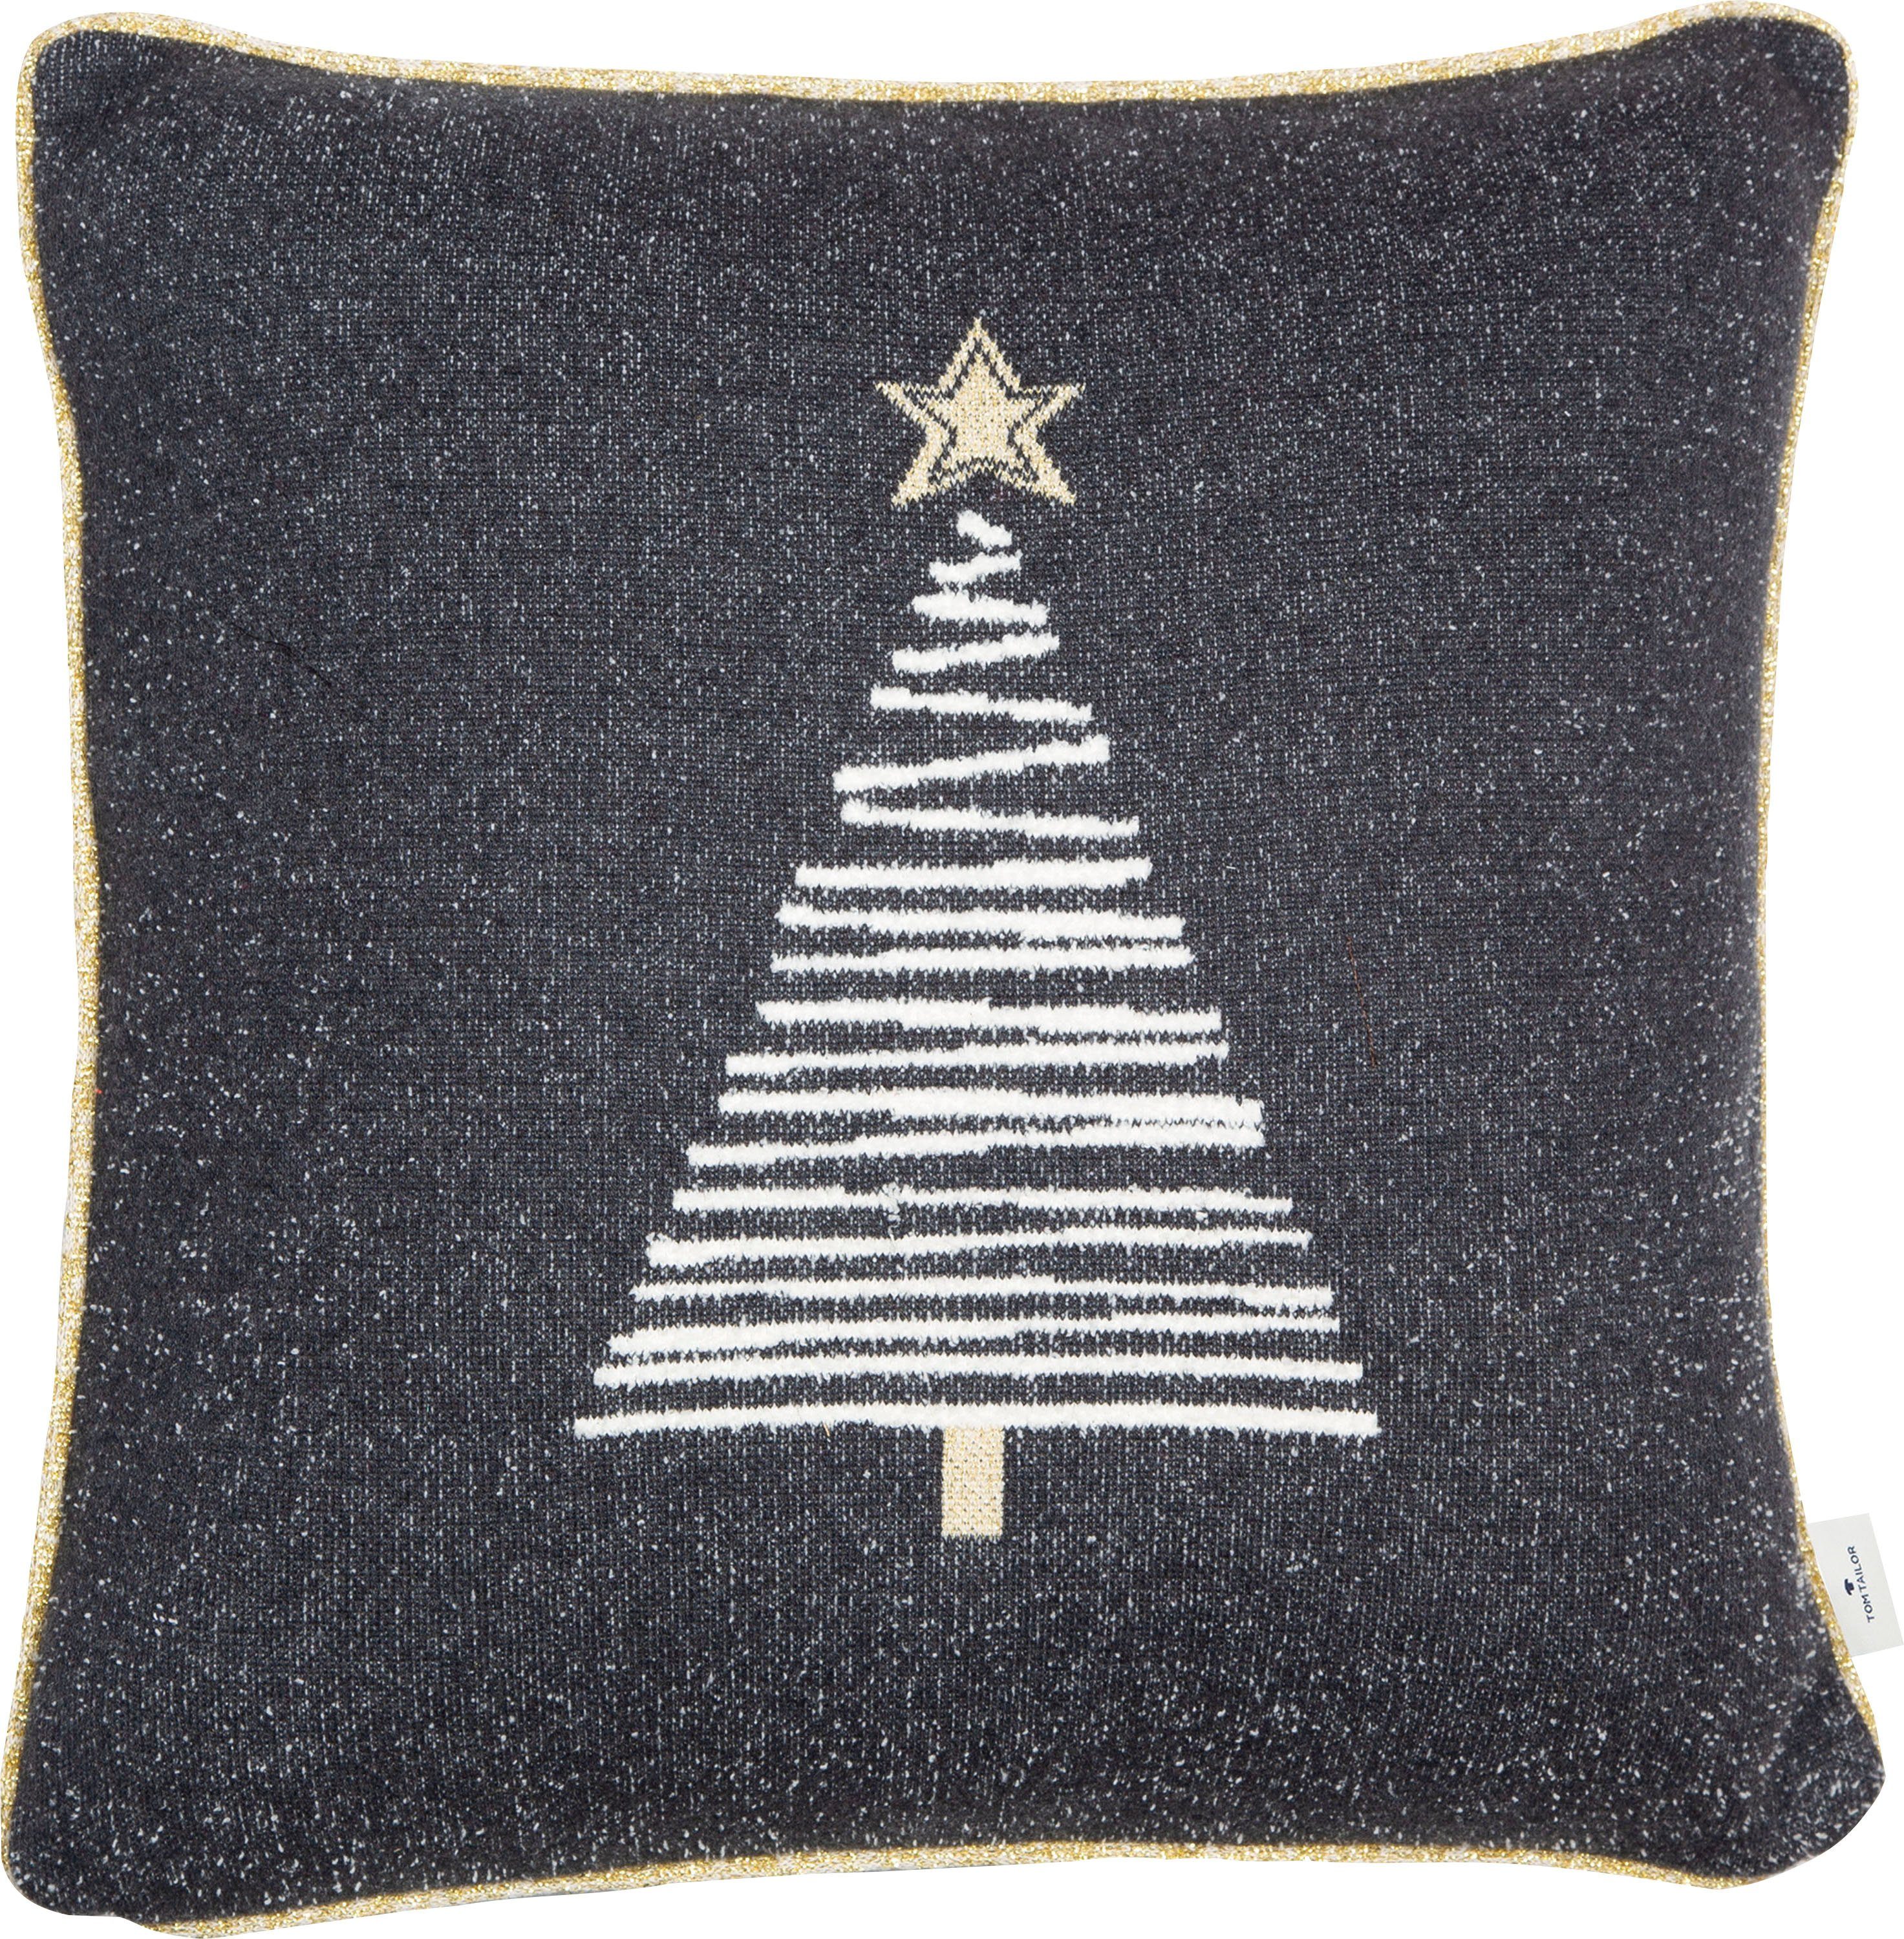 TOM TAILOR HOME Dekokissen Knitted Shiny Tree, Gestrickte Kissenhülle ohne  füllung mit Weihnachtsbaum-Motiv, 1 Stück, 100% Baumwolle - nicht  outdoorgeeignet